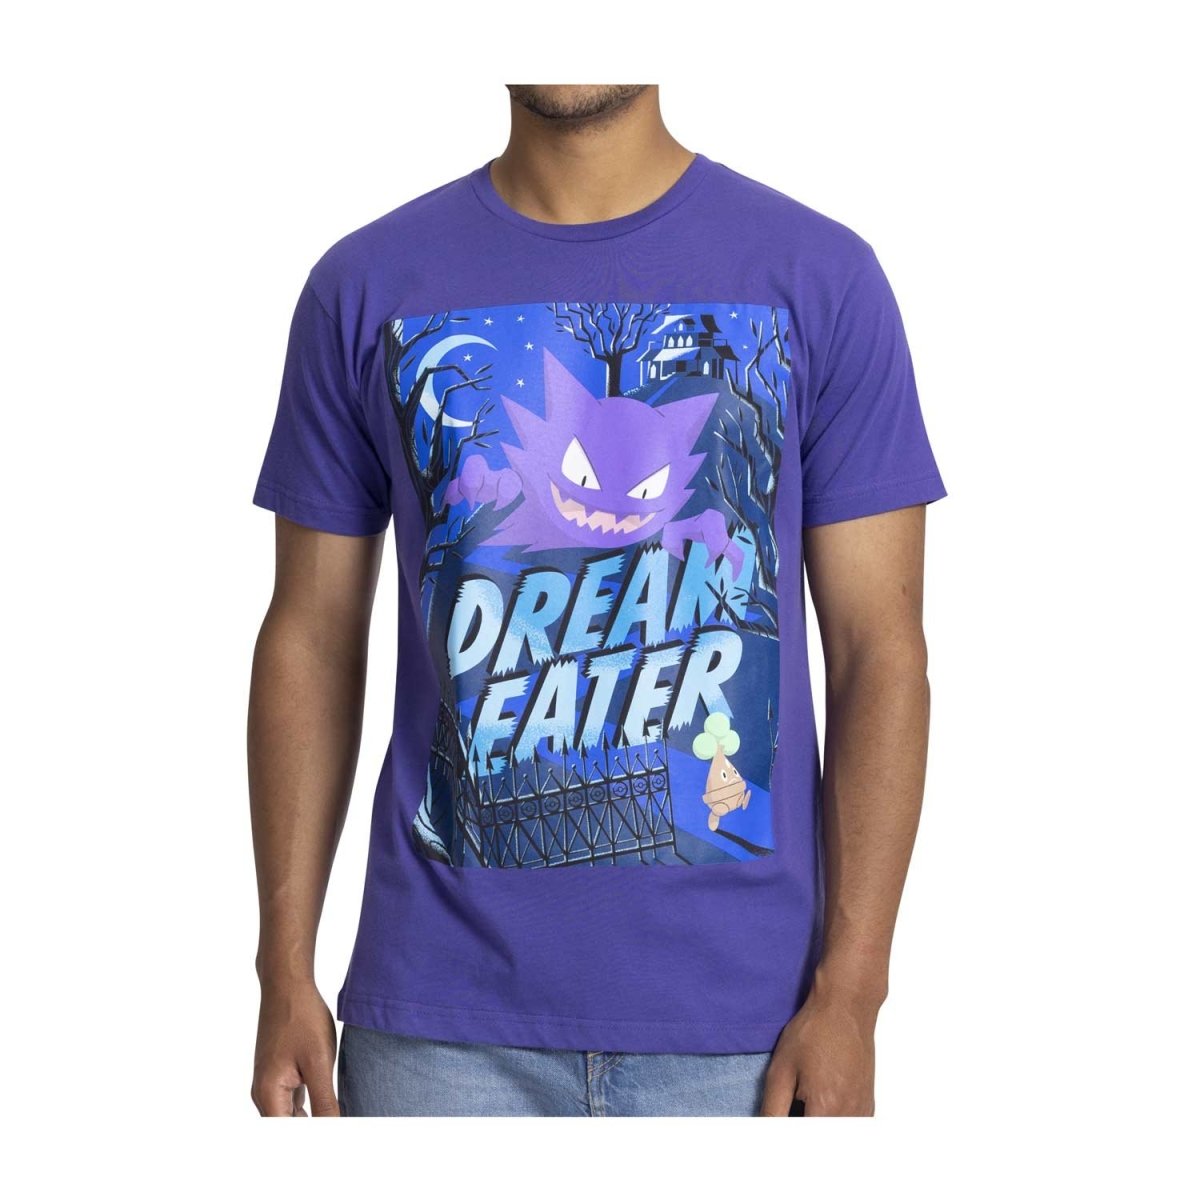 Haunter Cinema Scares T-Shirt | Pokémon Center UK Official Site